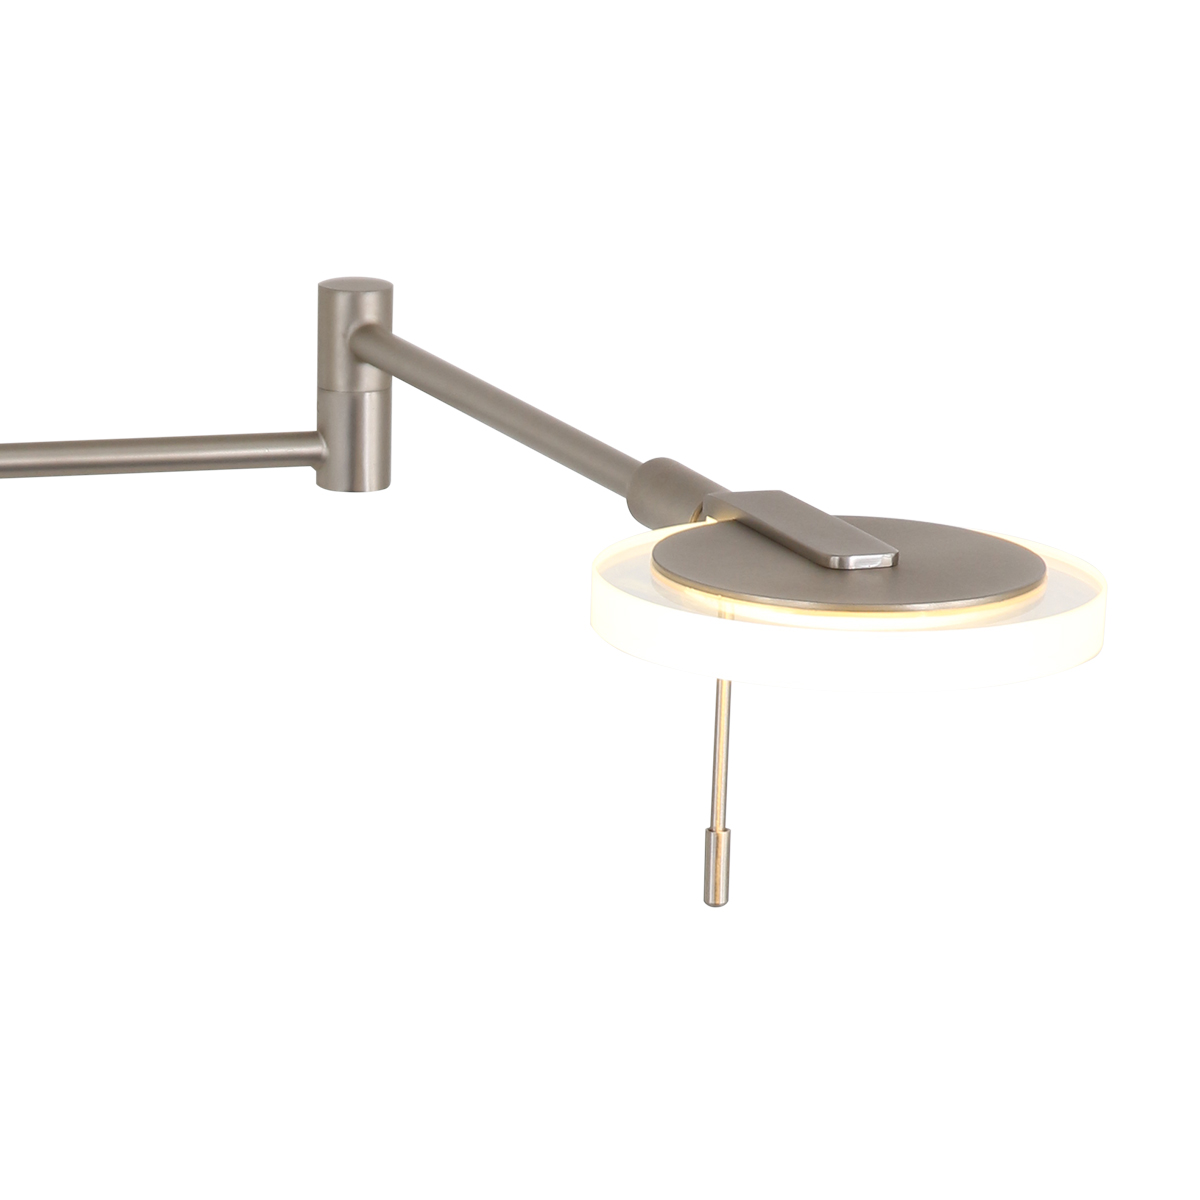 LED Stehleuchte Turound mit Bridgegelenk hoehenverstellbar helle 10 Watt in Silber / Stahl